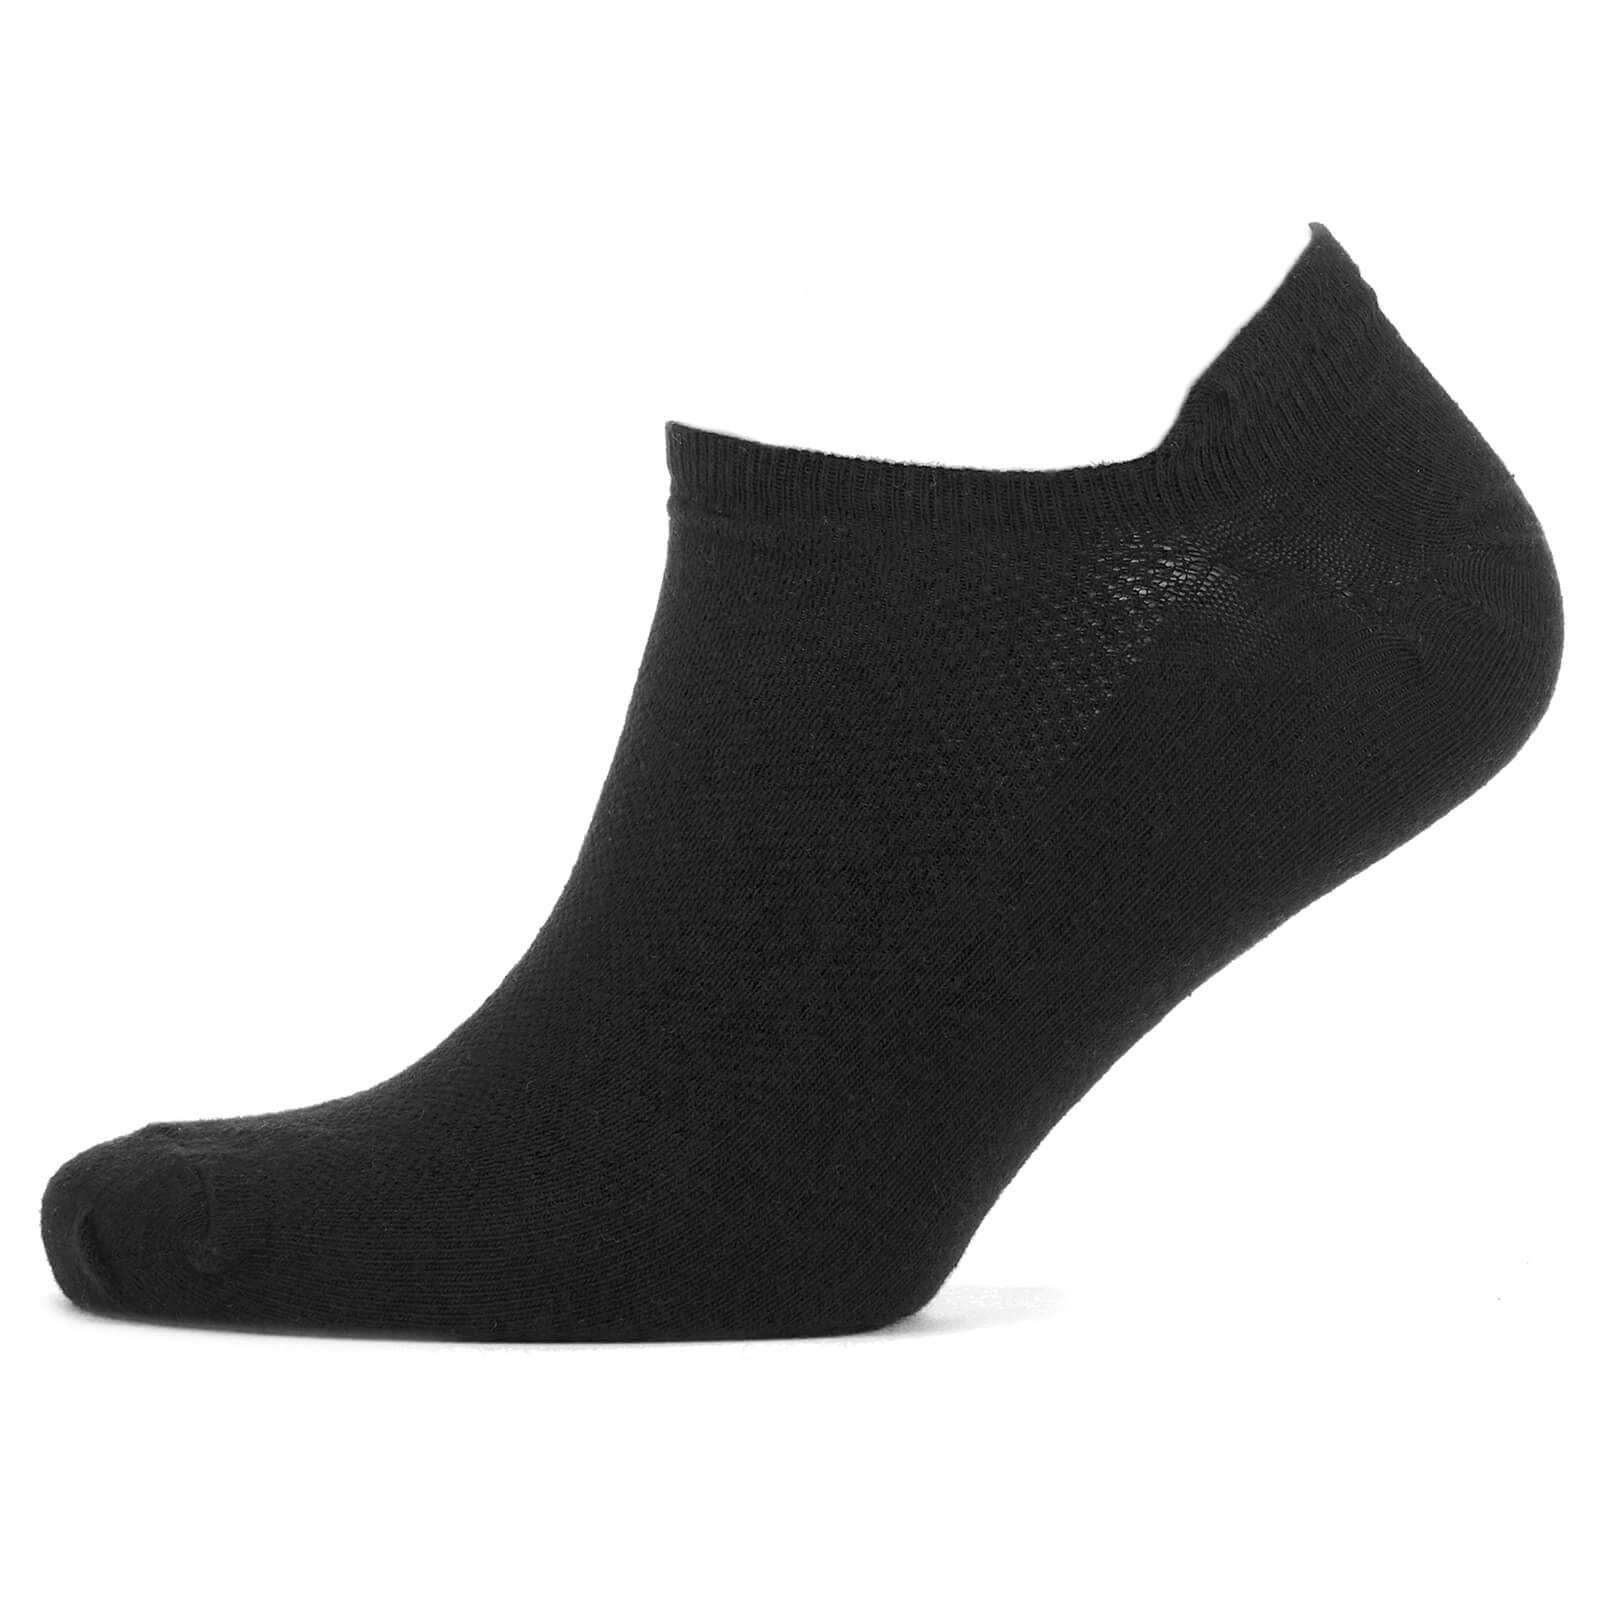 Trainer Socks (Black) - UK 6-8